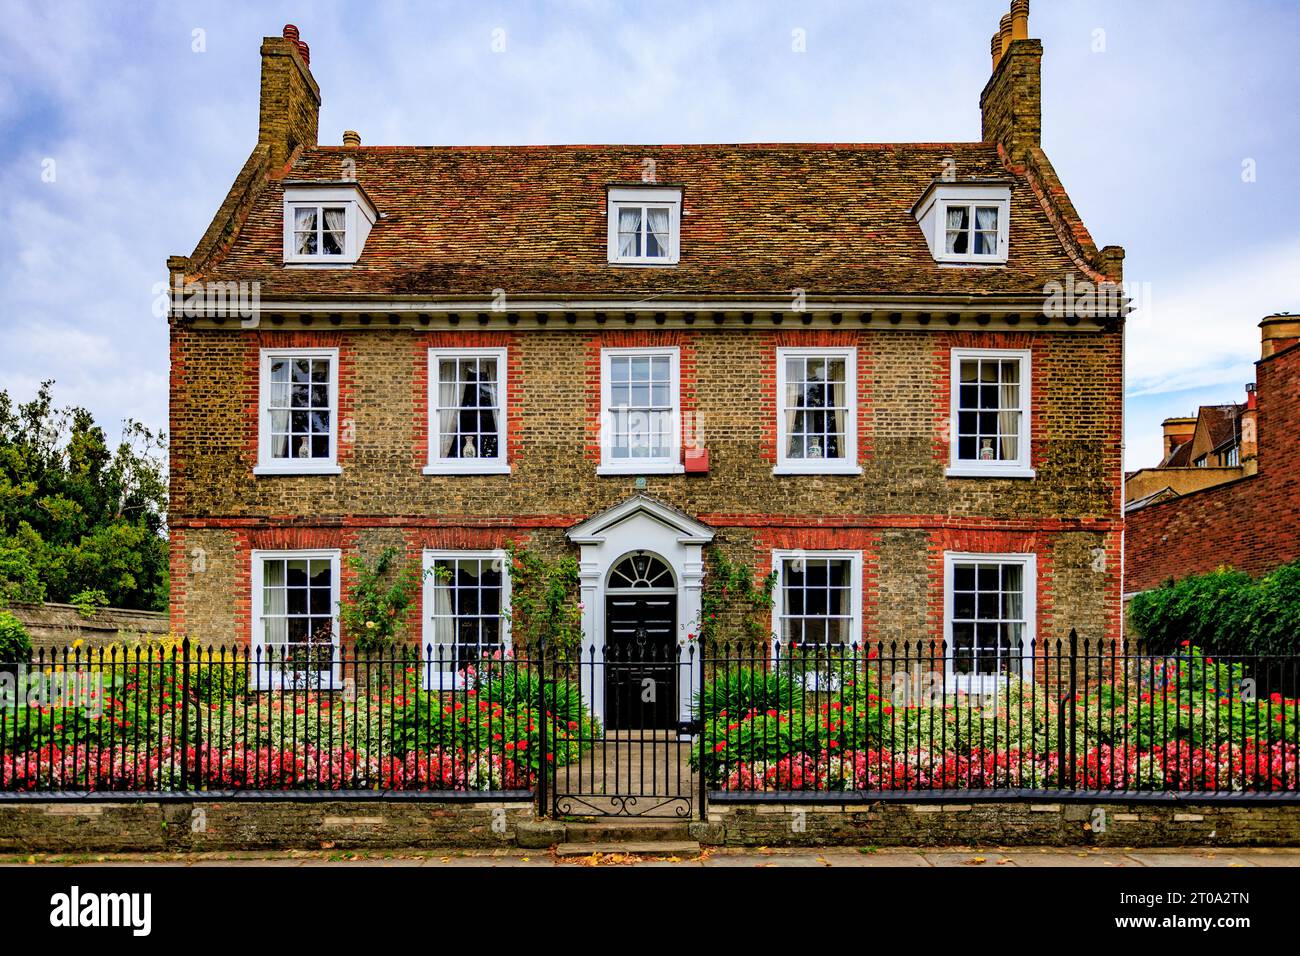 Die unverwechselbare und attraktive georgianische Architektur und der farbenfrohe Garten des No.3 Palace Green in Ely, Cambridgeshire, England, Großbritannien Stockfoto